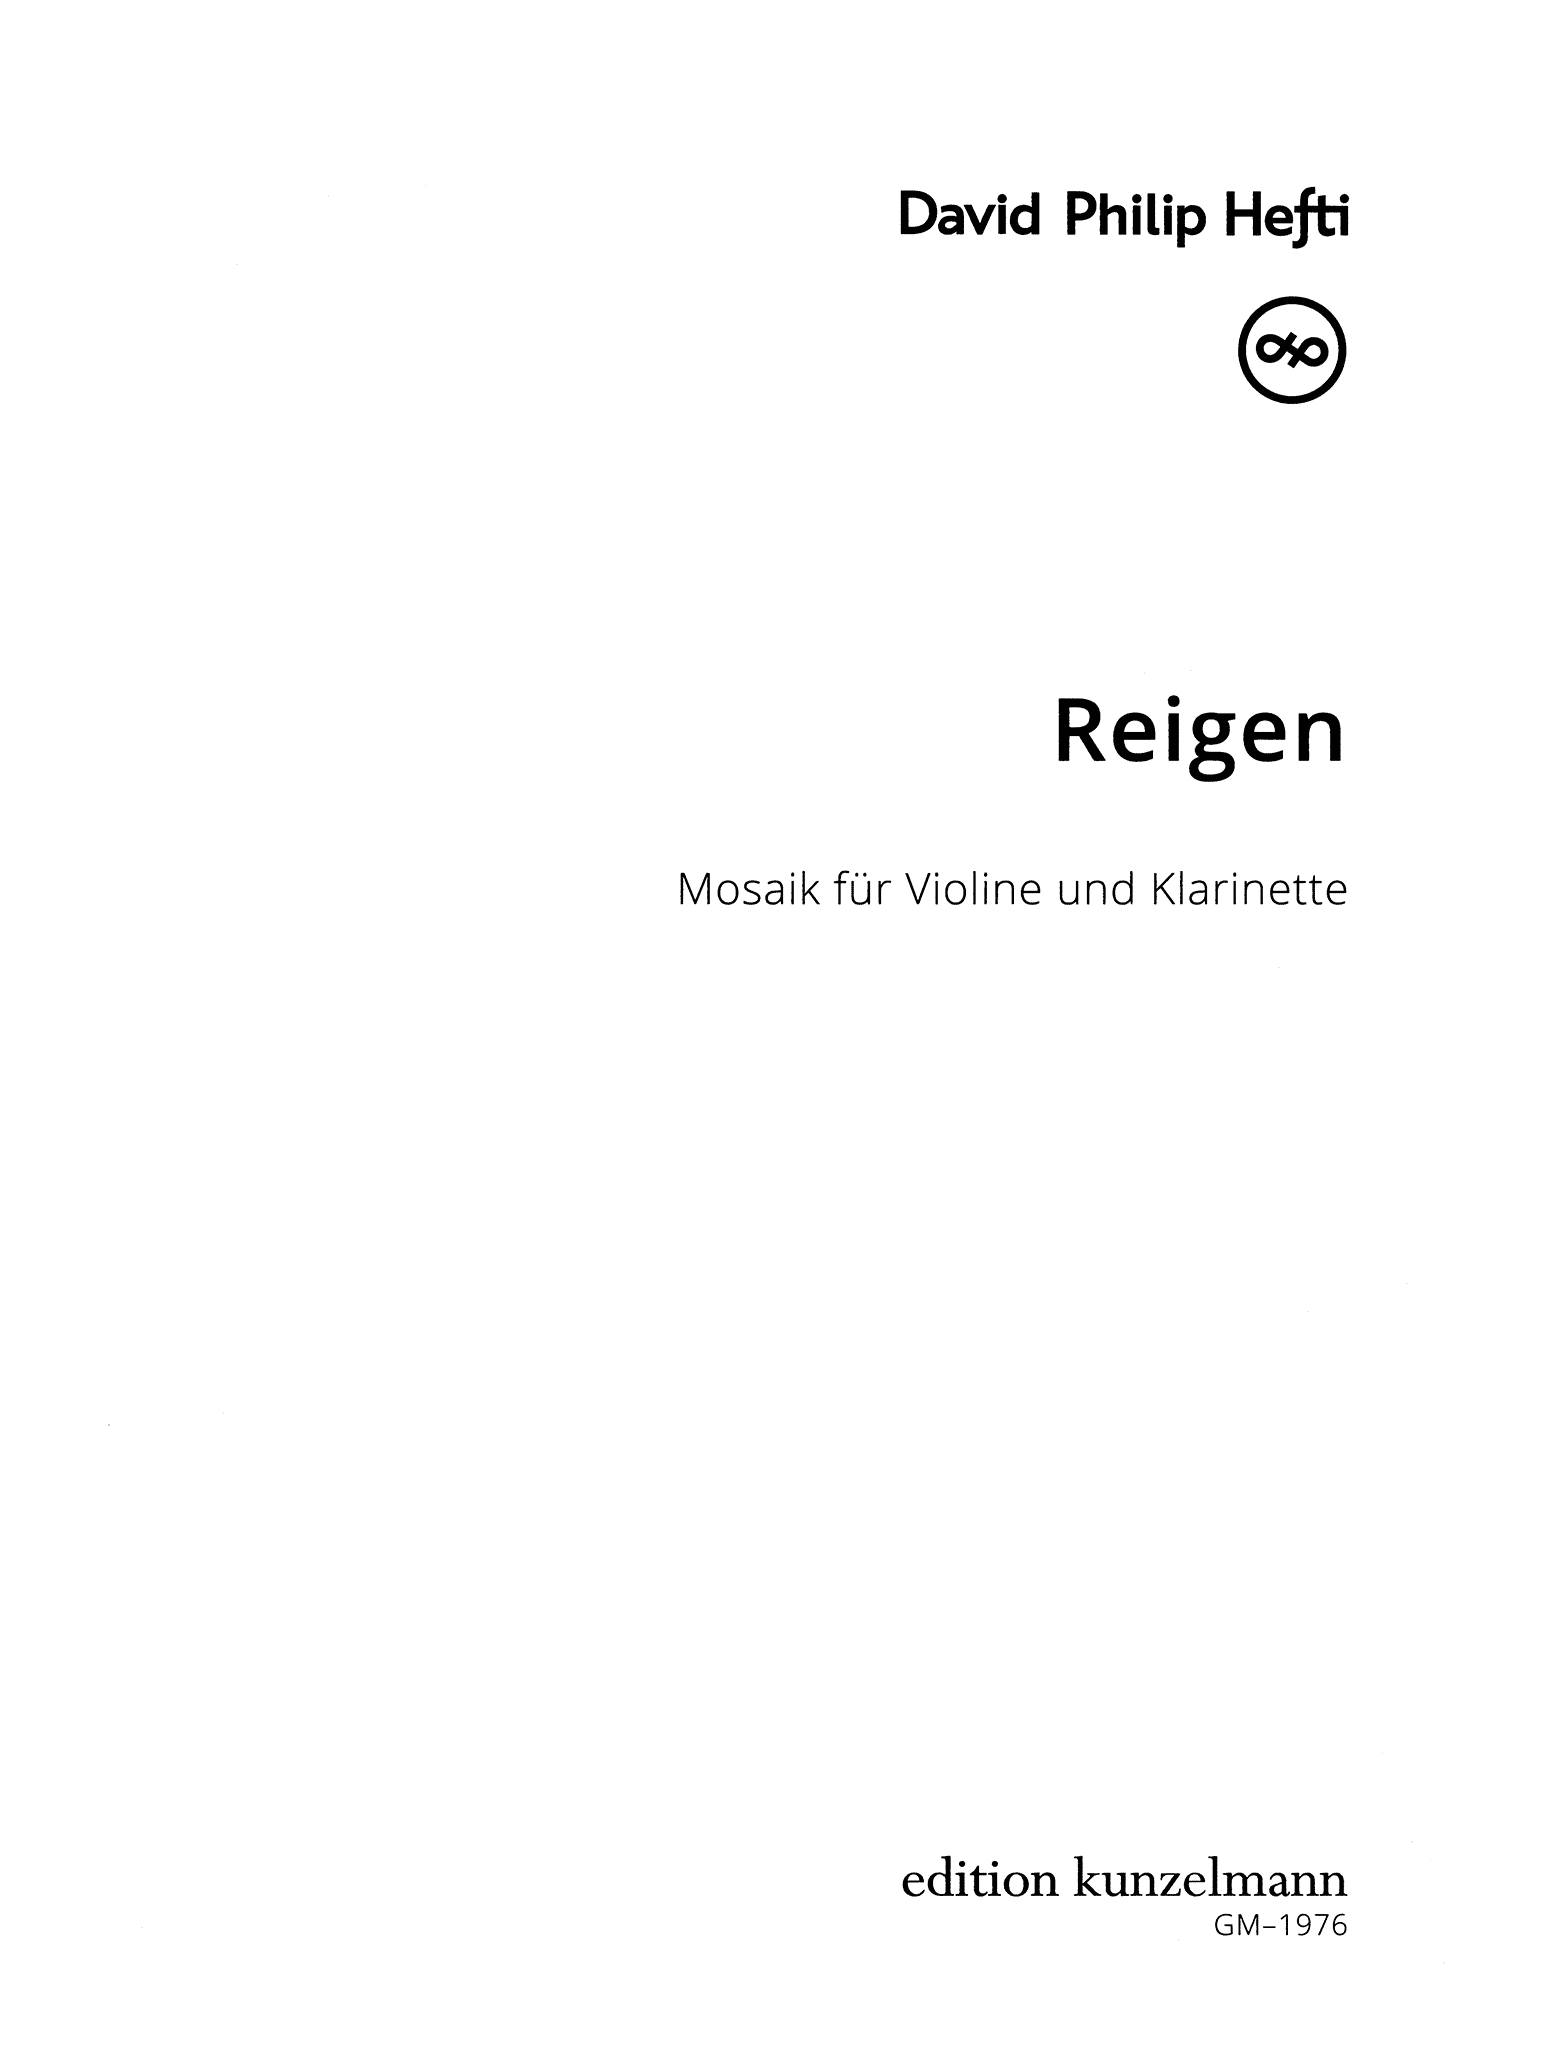 Hefti Reigen clarinet & violin duet cover